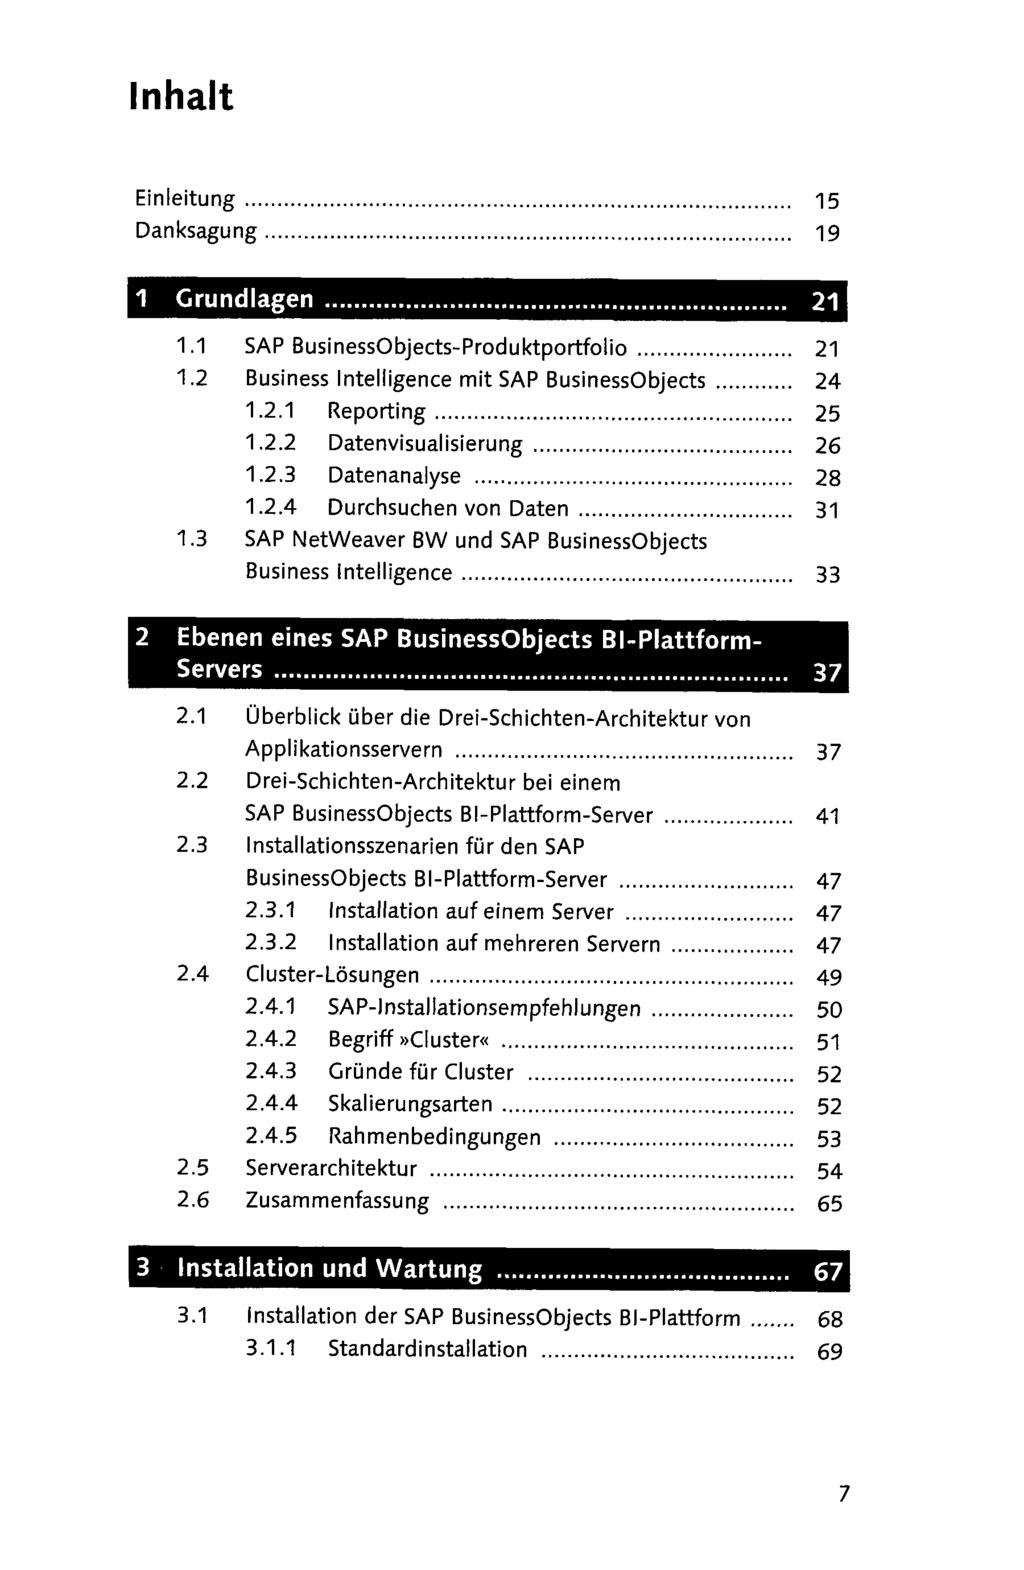 Einleitung 15 Danksagung 19 1.1 SAP BusinessObjectsProduktportfolio 21 1.2 Business Intelligence mit SAP BusinessObjects 24 1.2.1 Reporting 25 1.2.2 Datenvisualisierung 26 1.2.3 Datenanalyse 28 1.2.4 Durchsuchen von Daten 31 1.